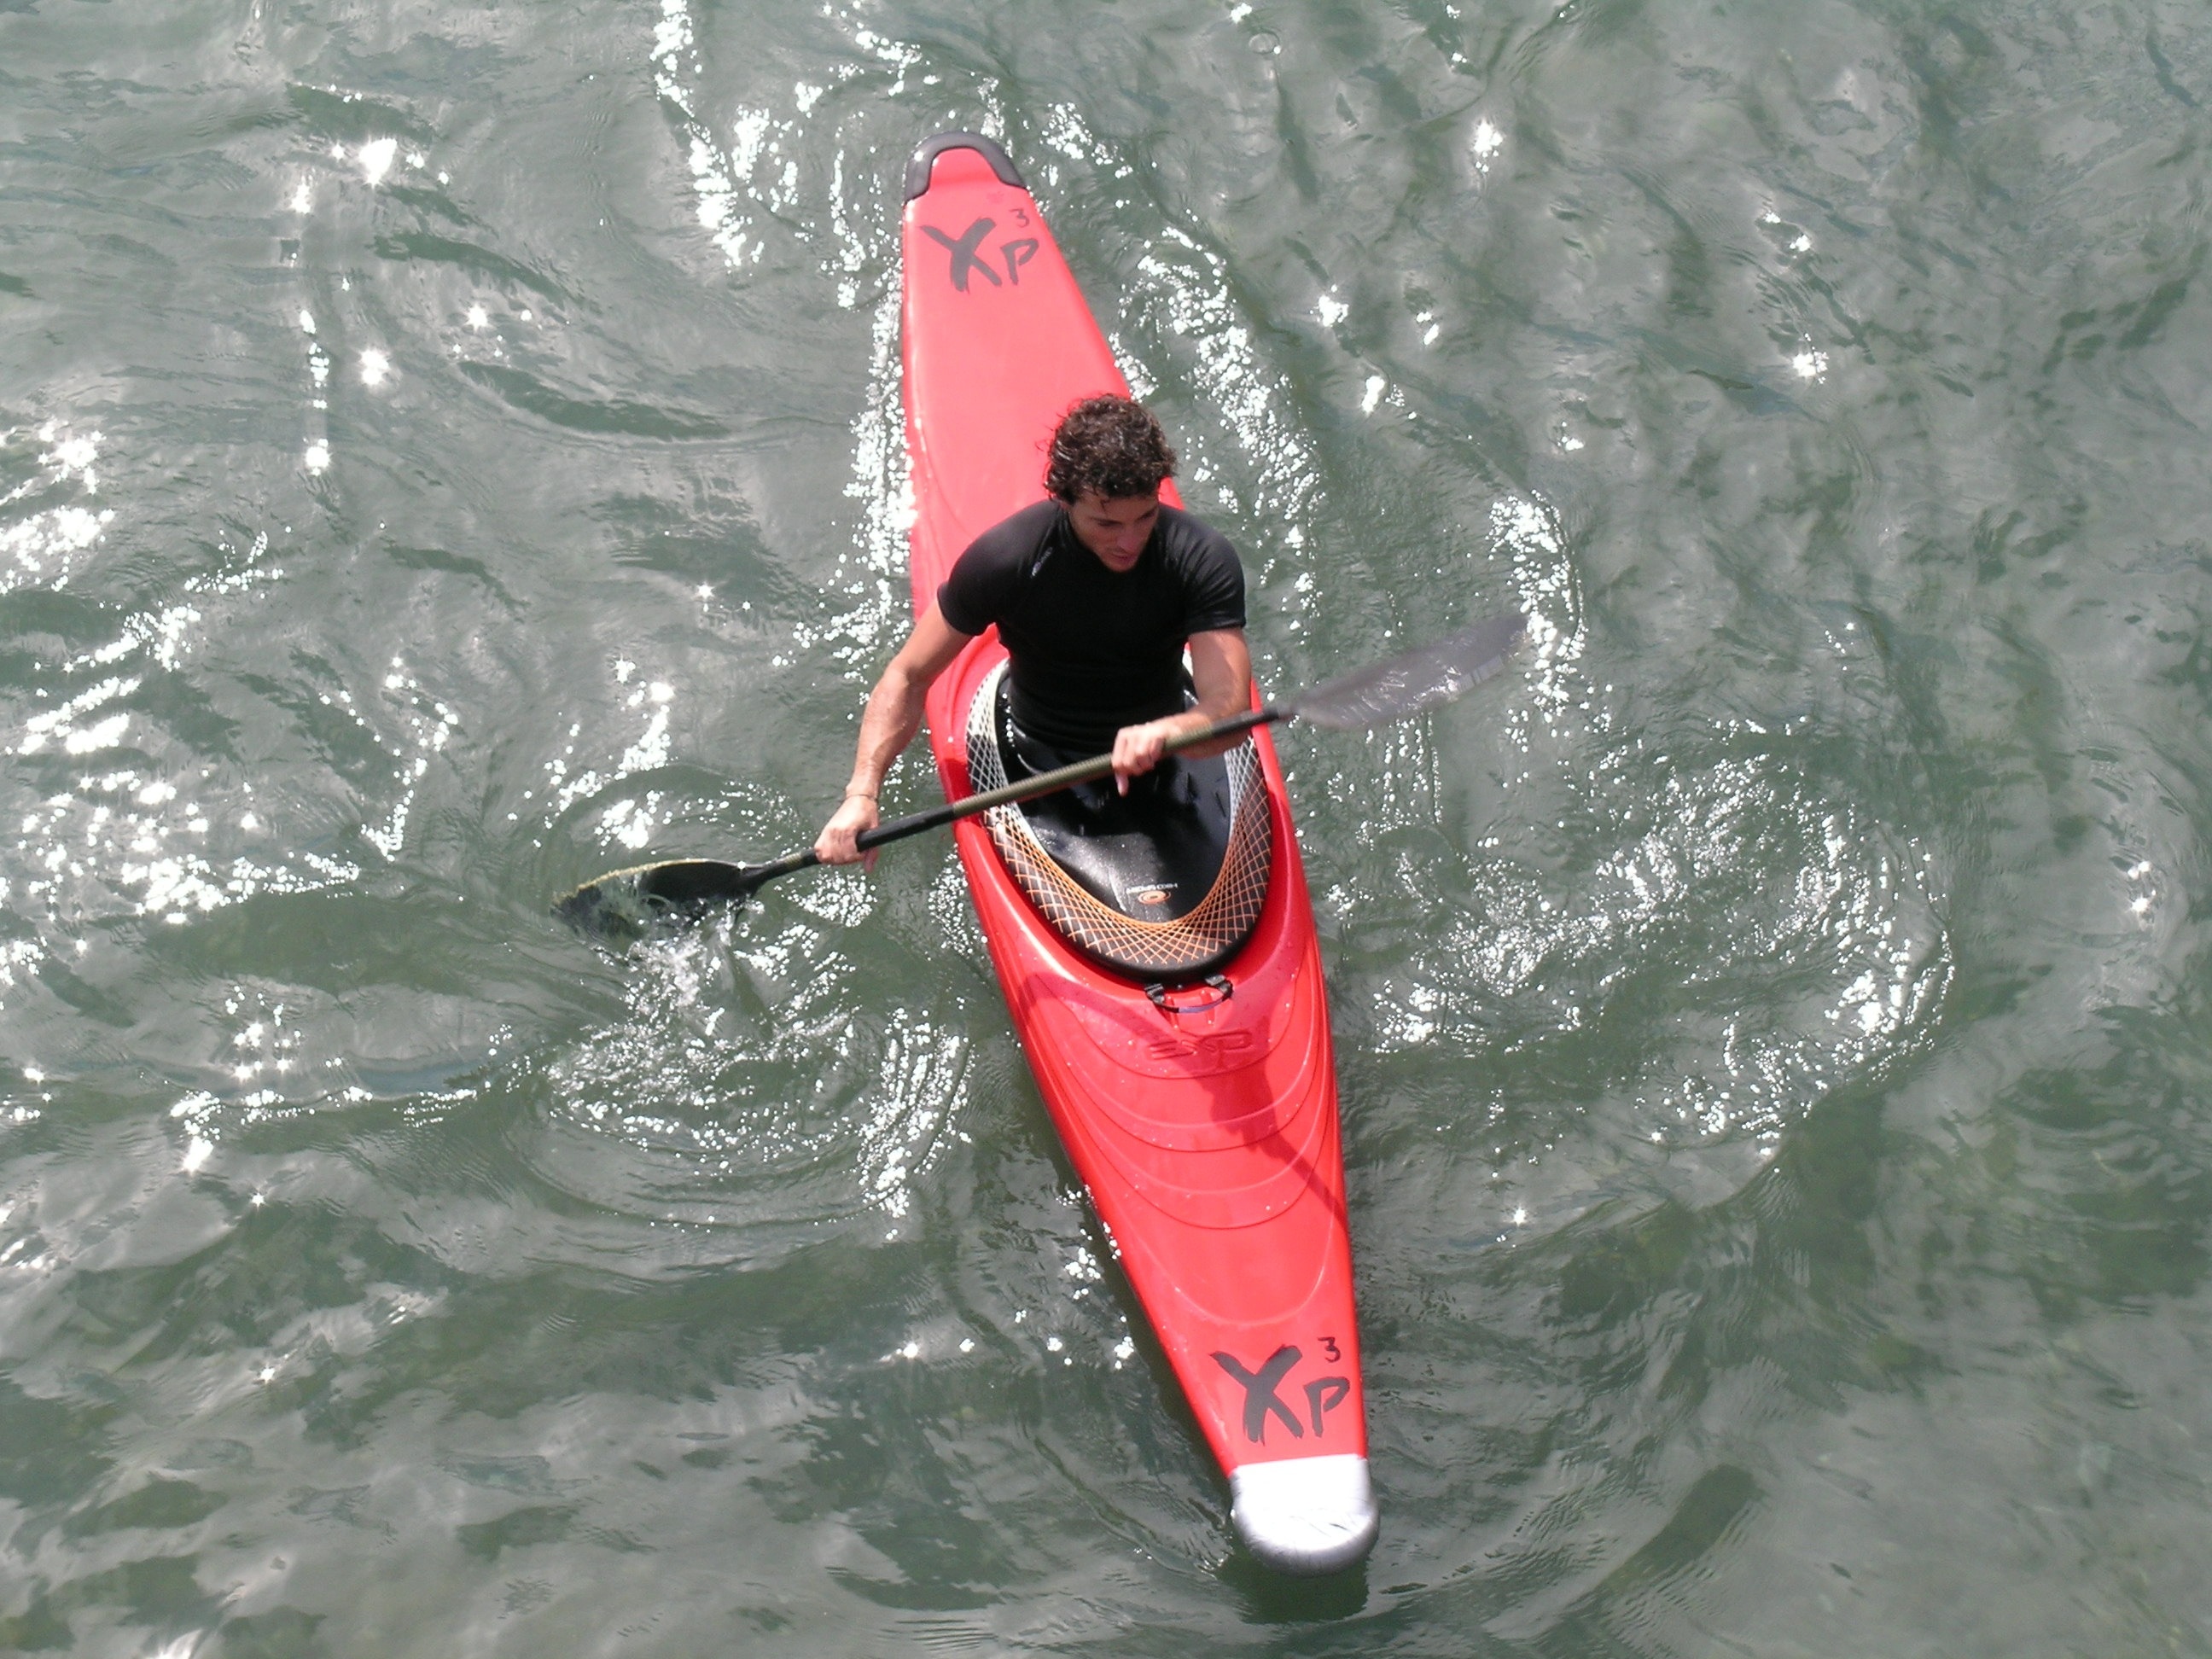 Sport, Canoeist, Canoeing, oar, one person